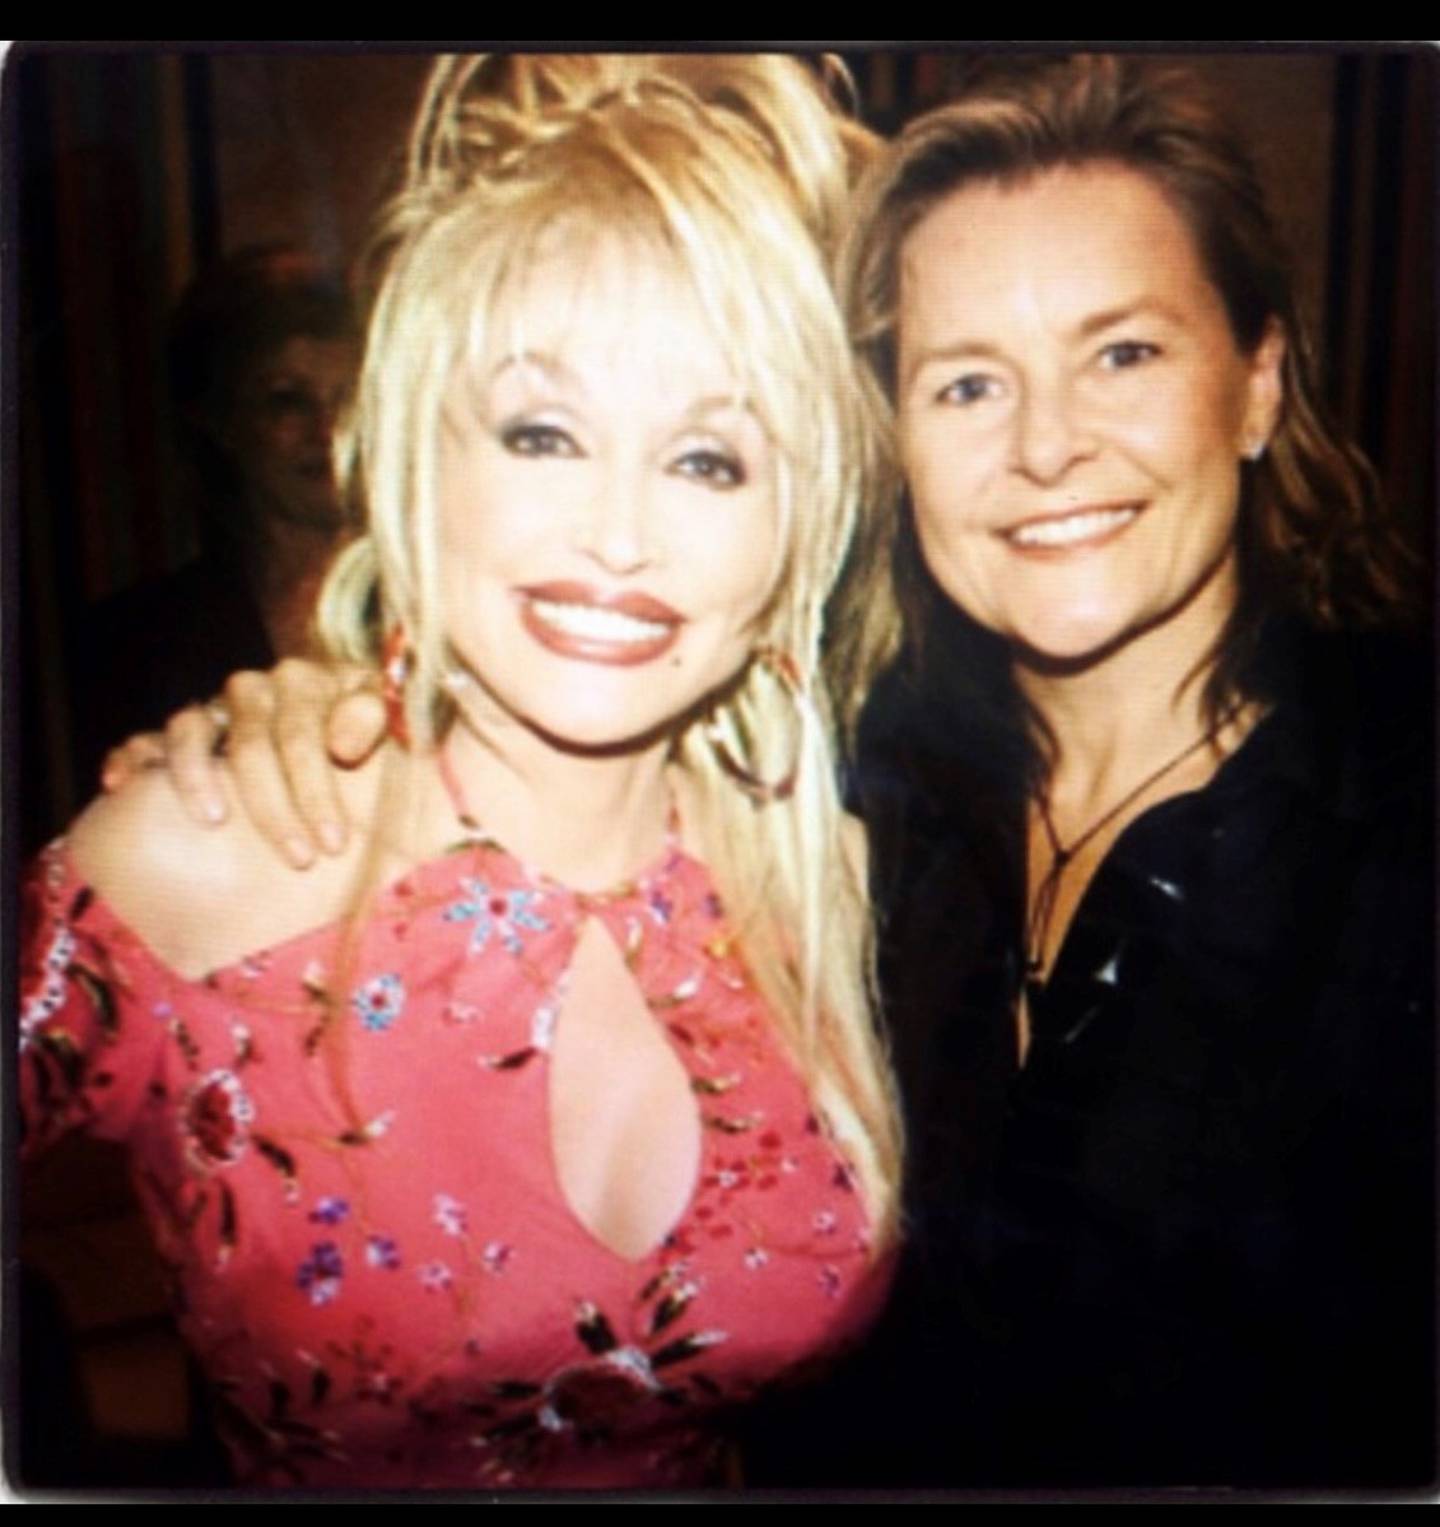 Elisabeth Andreassen da hun fikk møte ikonet Dolly Parton: – Hun har alltid vært et forbilde for meg, sier Andreassen, som selv ble oppdaget da hun gjorde en coverversjon av Dolly Partons «I Will Always Love You» i Stockholm i 1979.